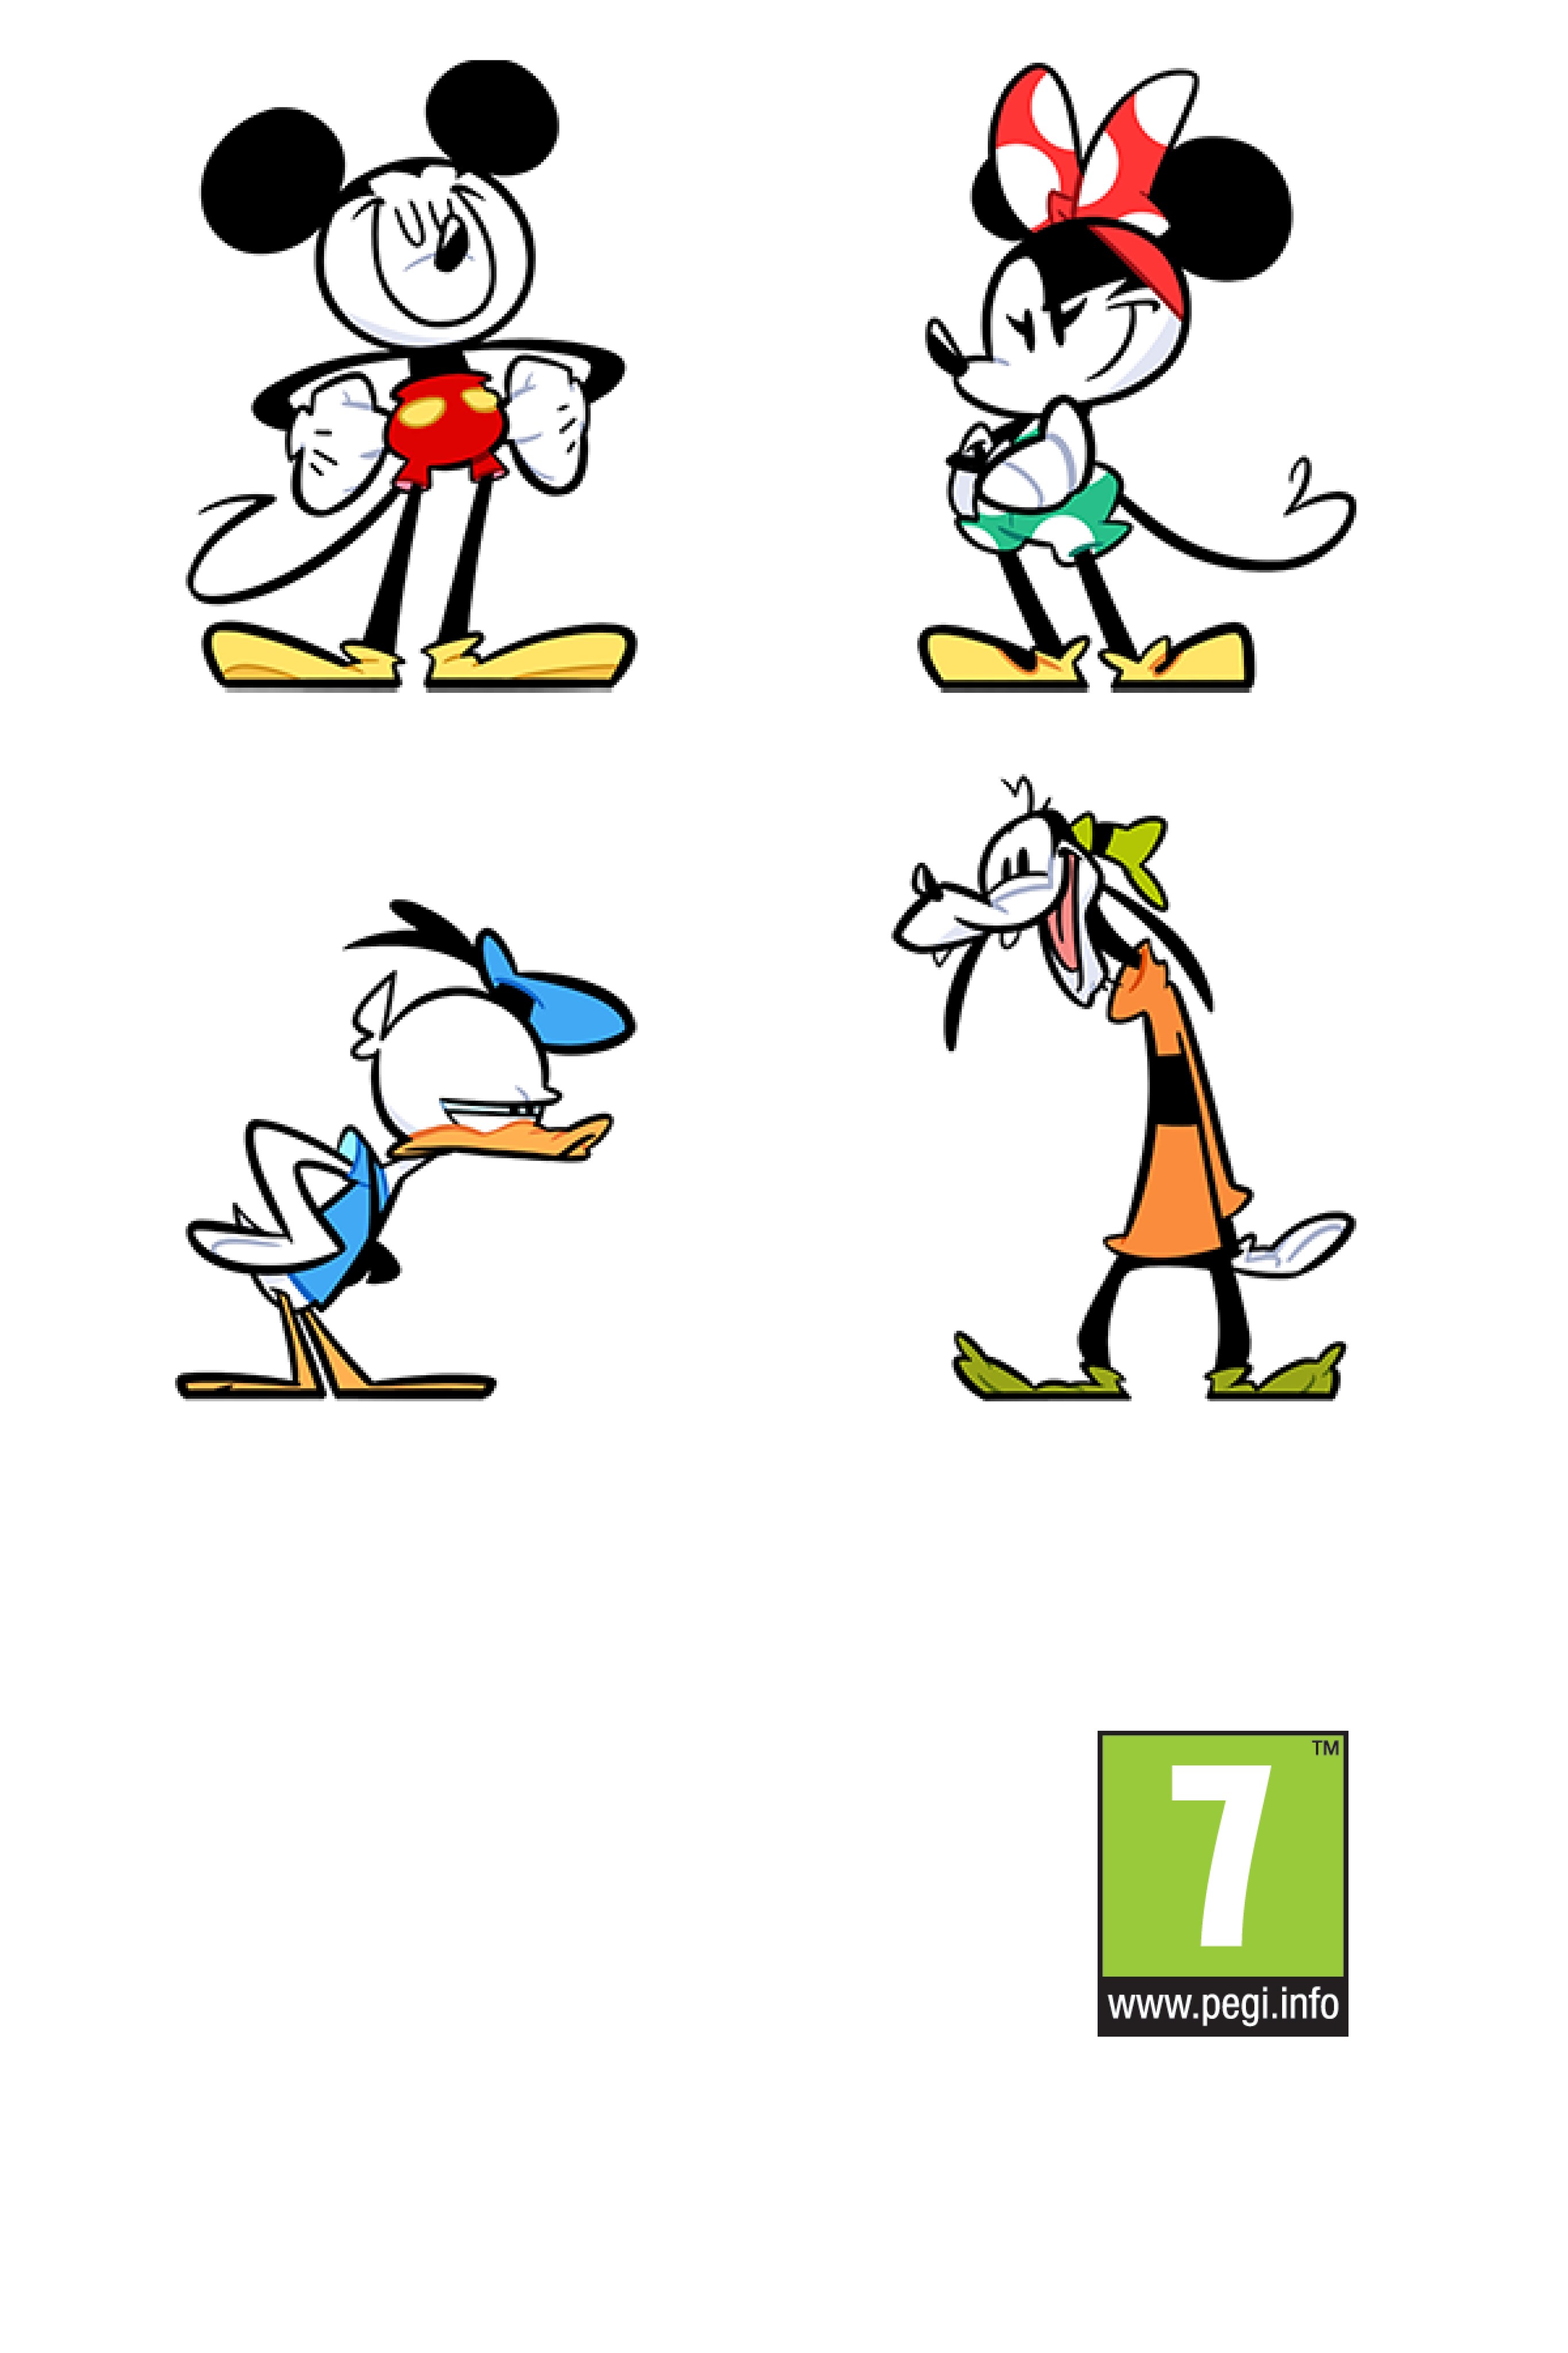 Mickey y sus amigos, incluida la clasificación por edades Pegi 7